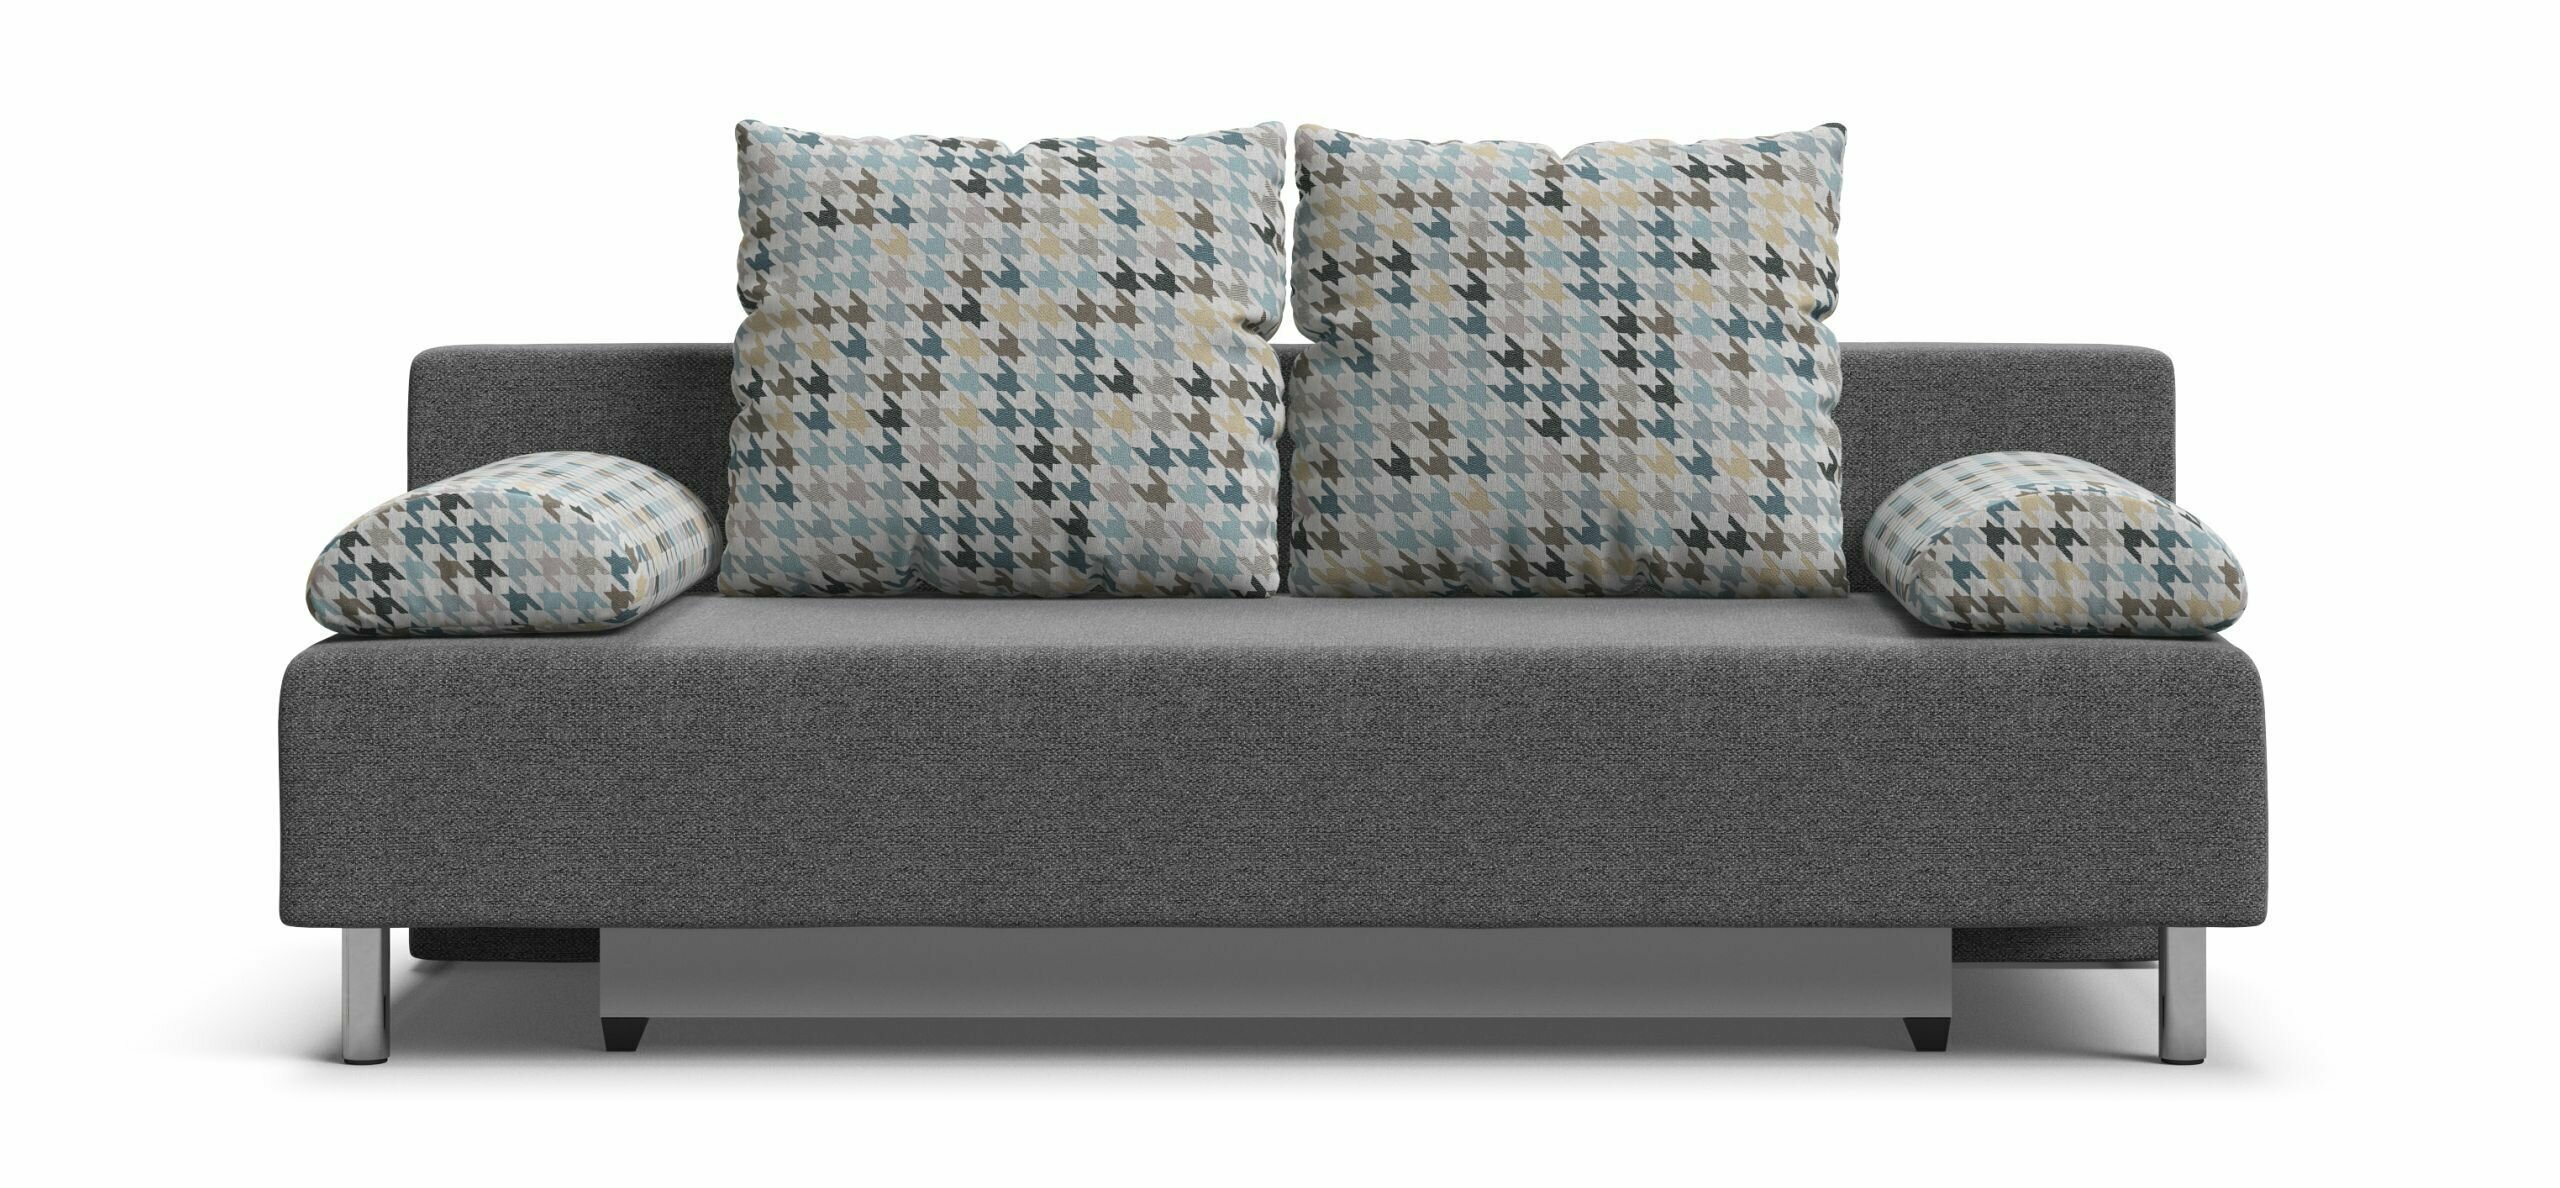 Диван-кровать с ящиками для хранения Мадрид New, еврокнижка, рогожка Malmo серый/мозайка голубой, 190х90х92 см - фотография № 2